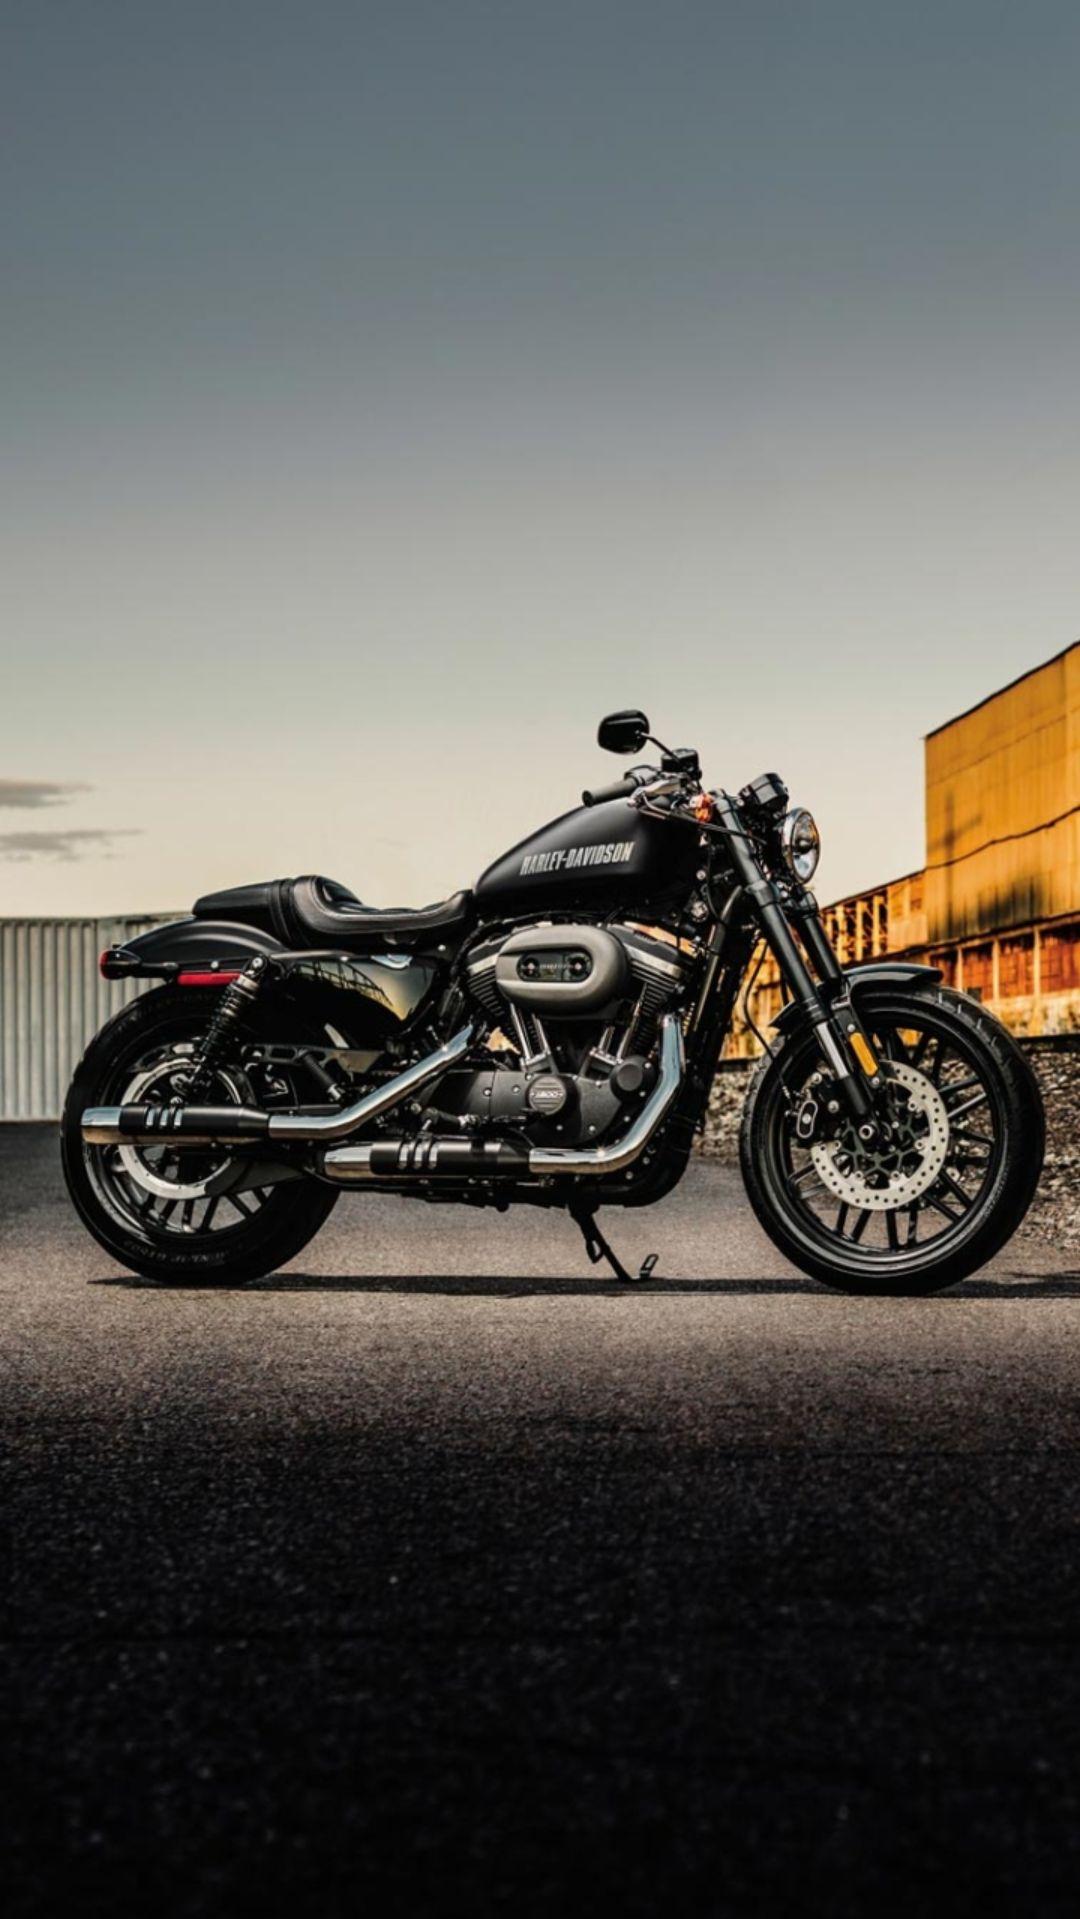 Harley Davidson Wallpapers   Top 35 Best Harley Davidson